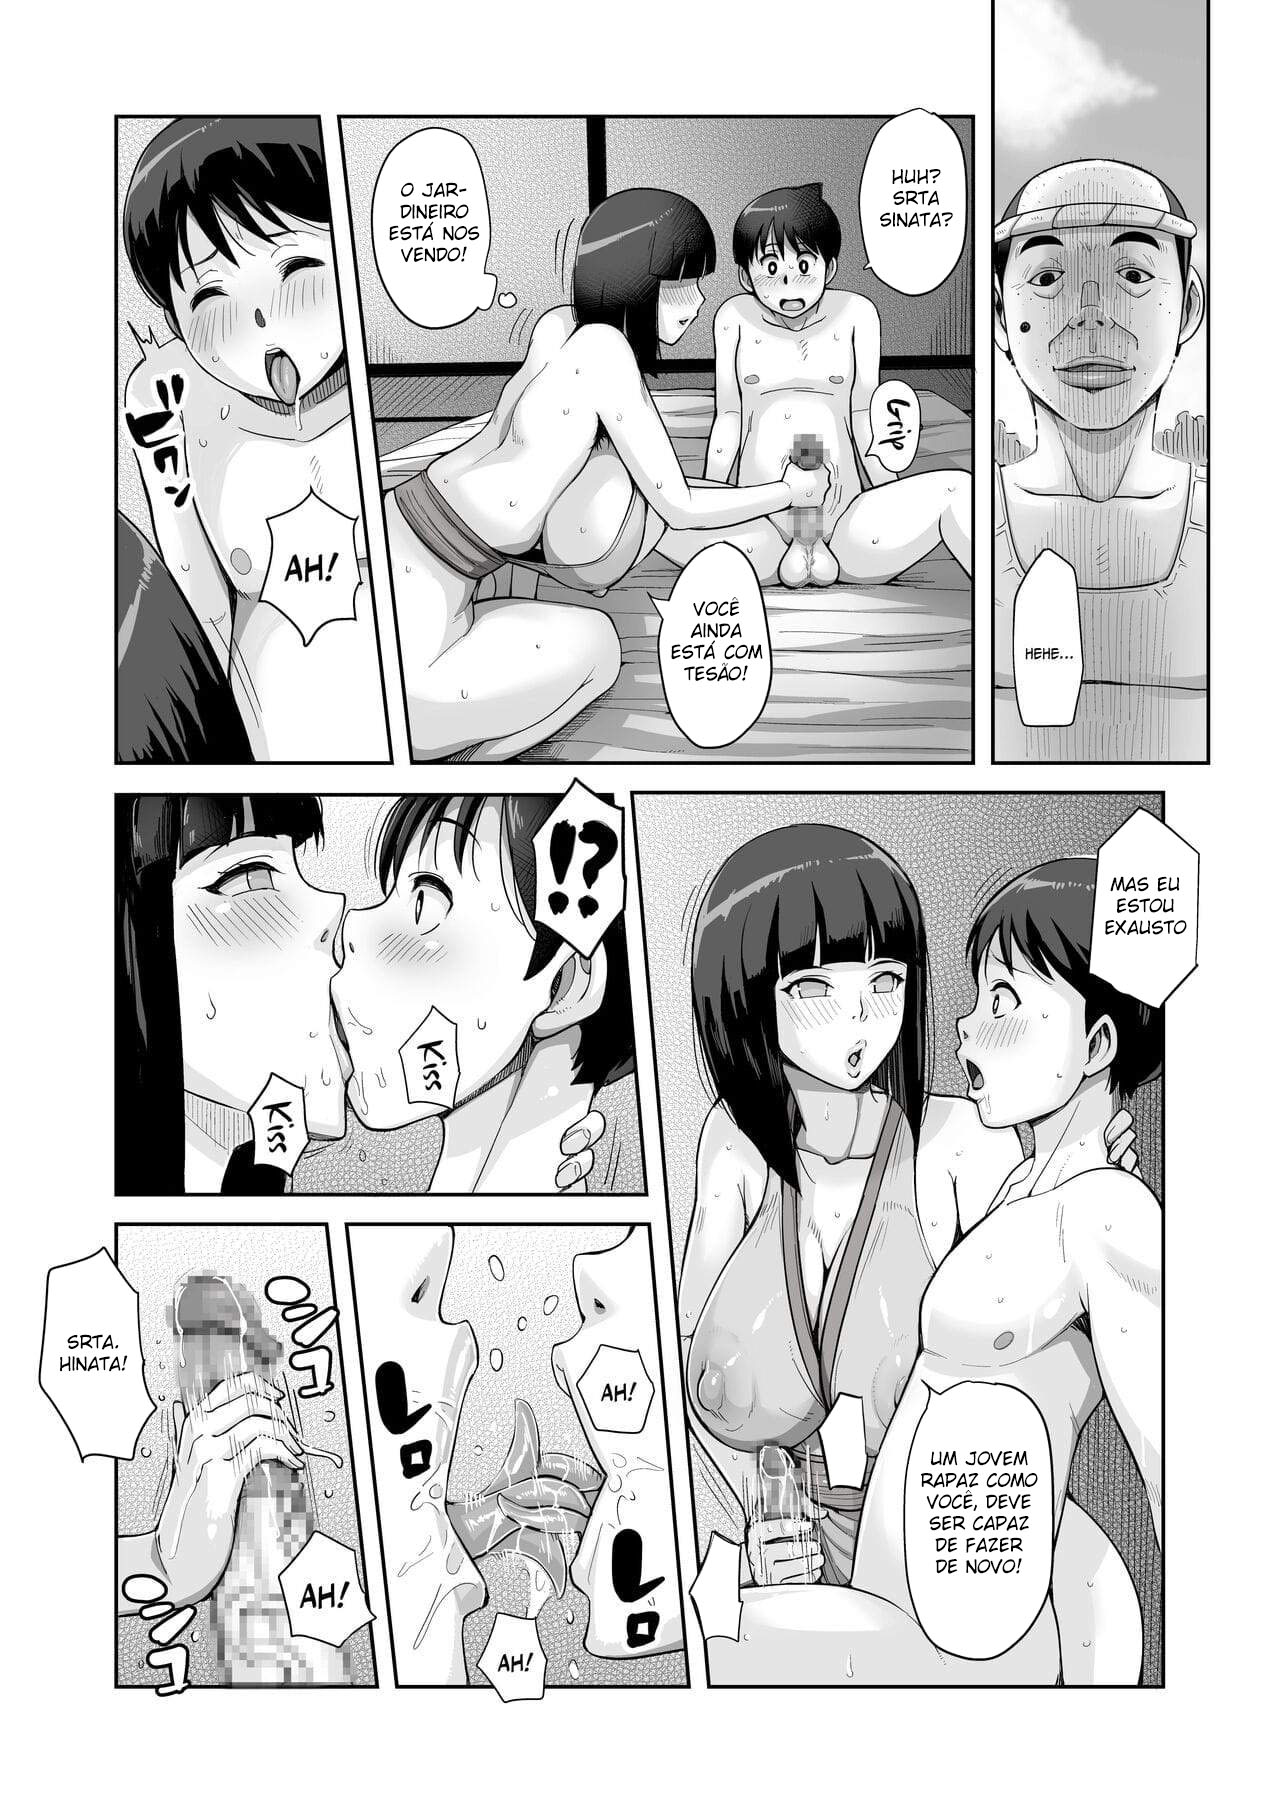 B-Kyuu Manga 12 Icnizoku no Shikitari 1-yame